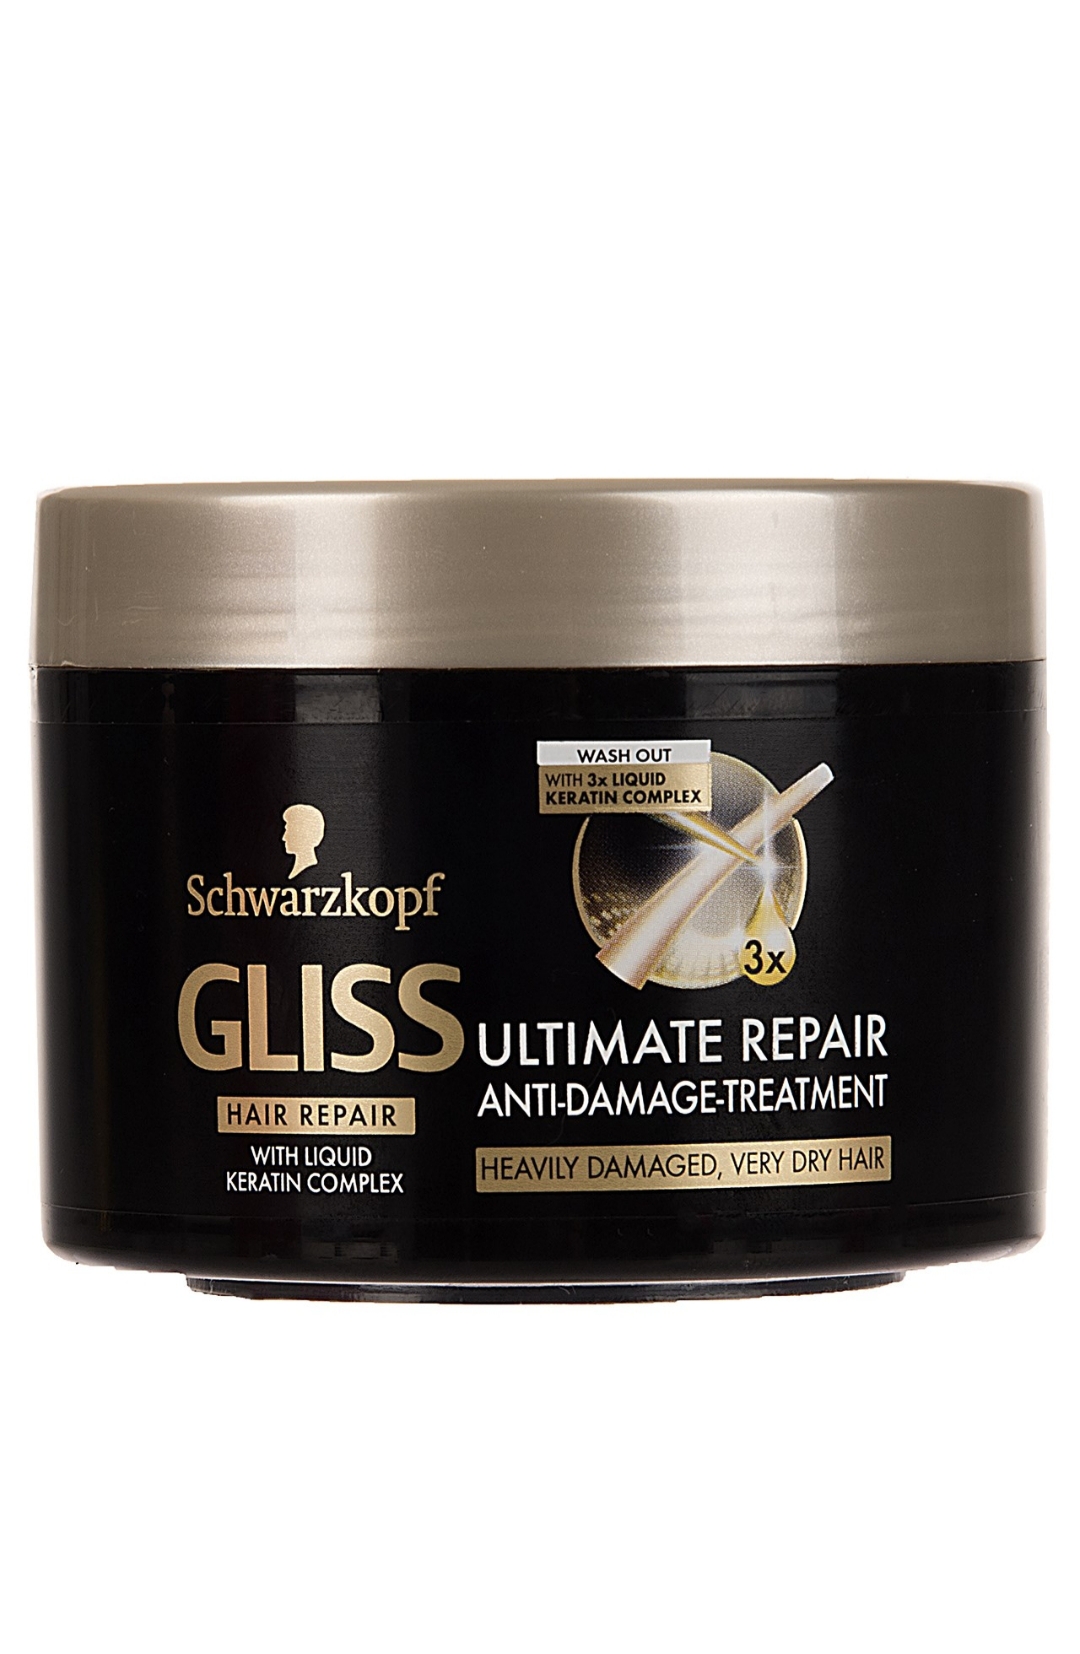 فراورده های حالت دهنده ،نرم کننده وتثبیت کننده آرایش مو (کرمها ، لوسیونها وروغنها) GLISS Hair Repair anti Damage Treatment (TRT Jar) Ultimate Repair